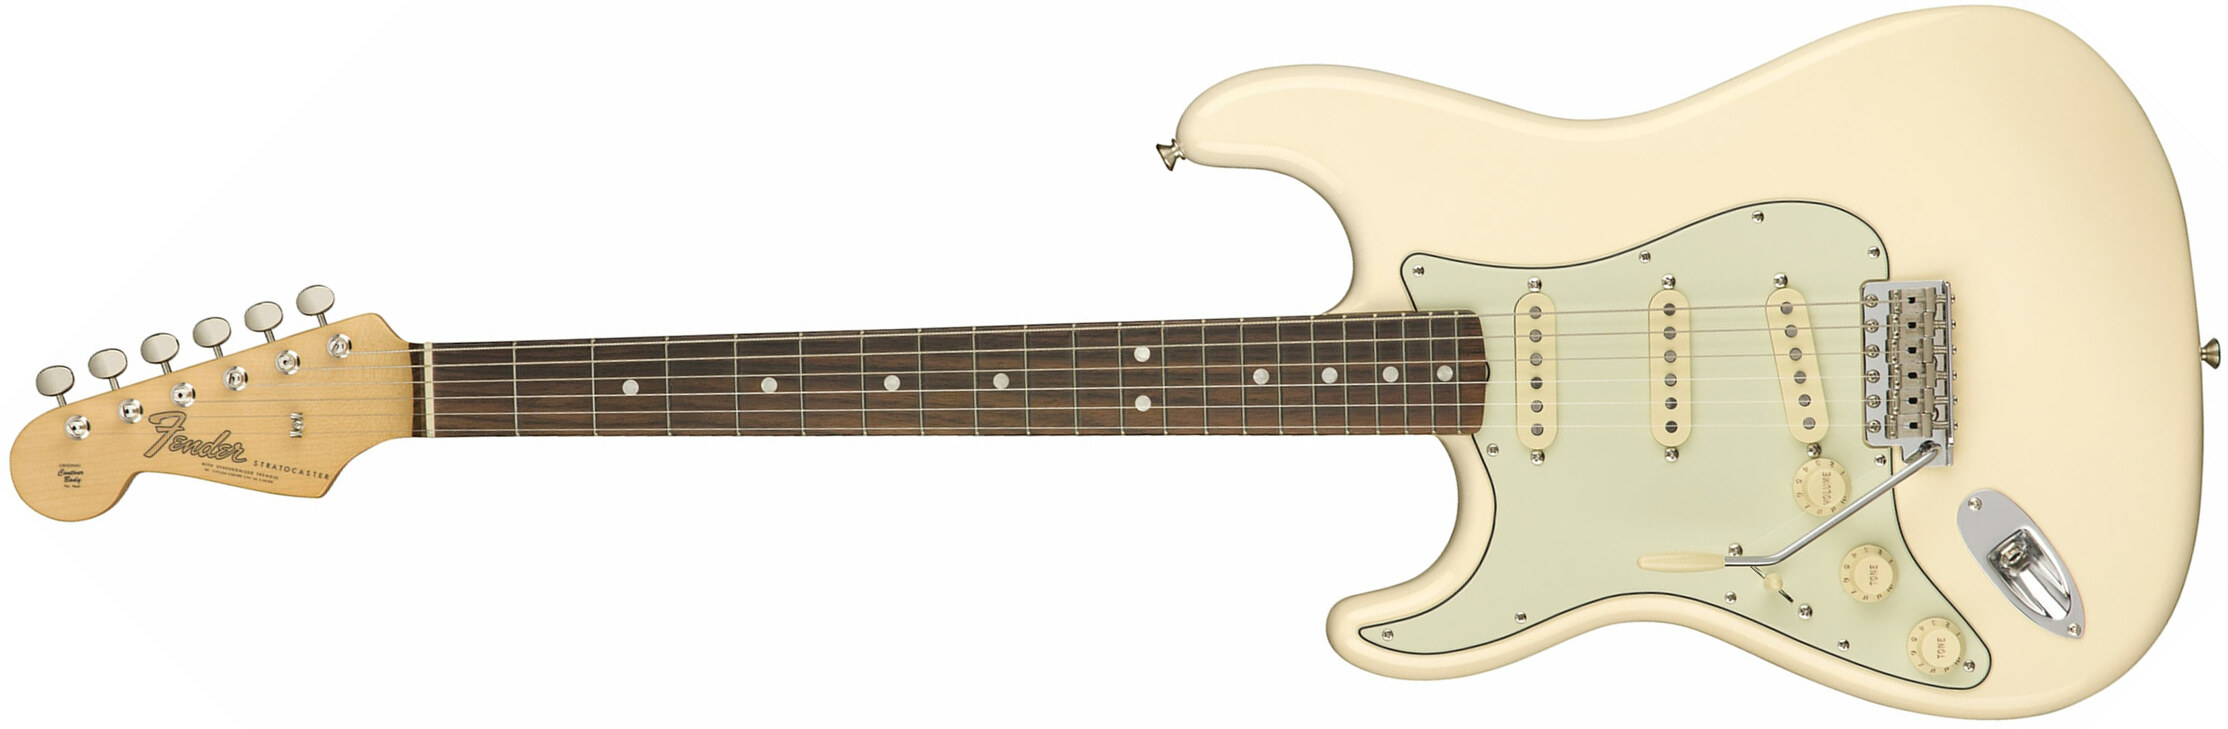 Fender Strat '60s Lh Gaucher American Original Usa Sss Rw - Olympic White - E-Gitarre für Linkshänder - Main picture